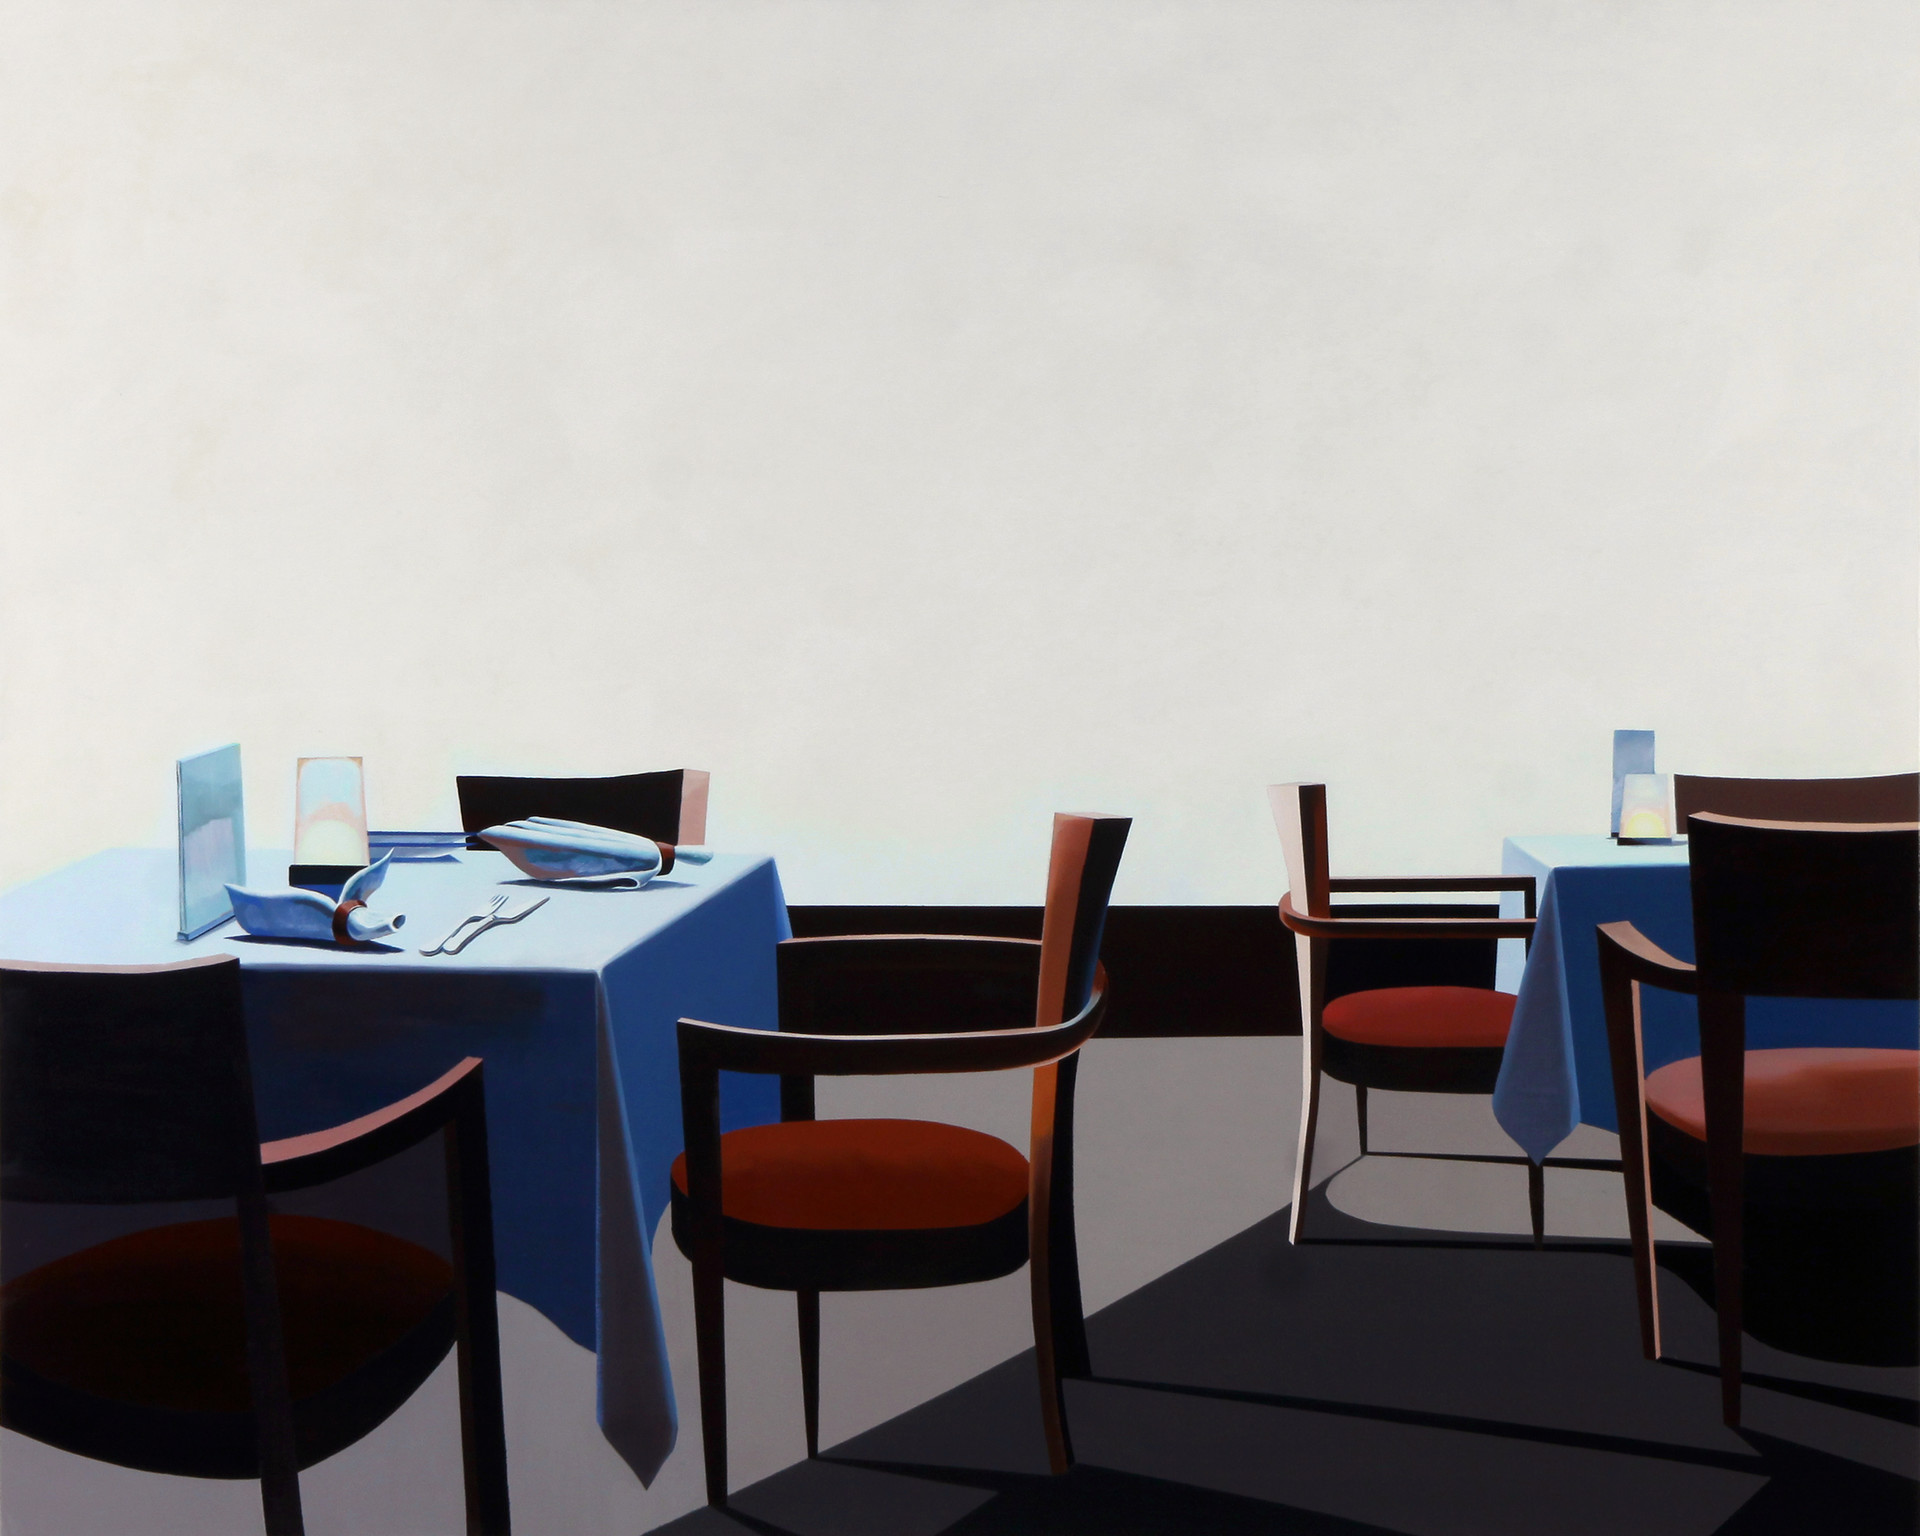 cafe cloud nine 2, Acrylic colors on canvas, 90x120cm, 2011